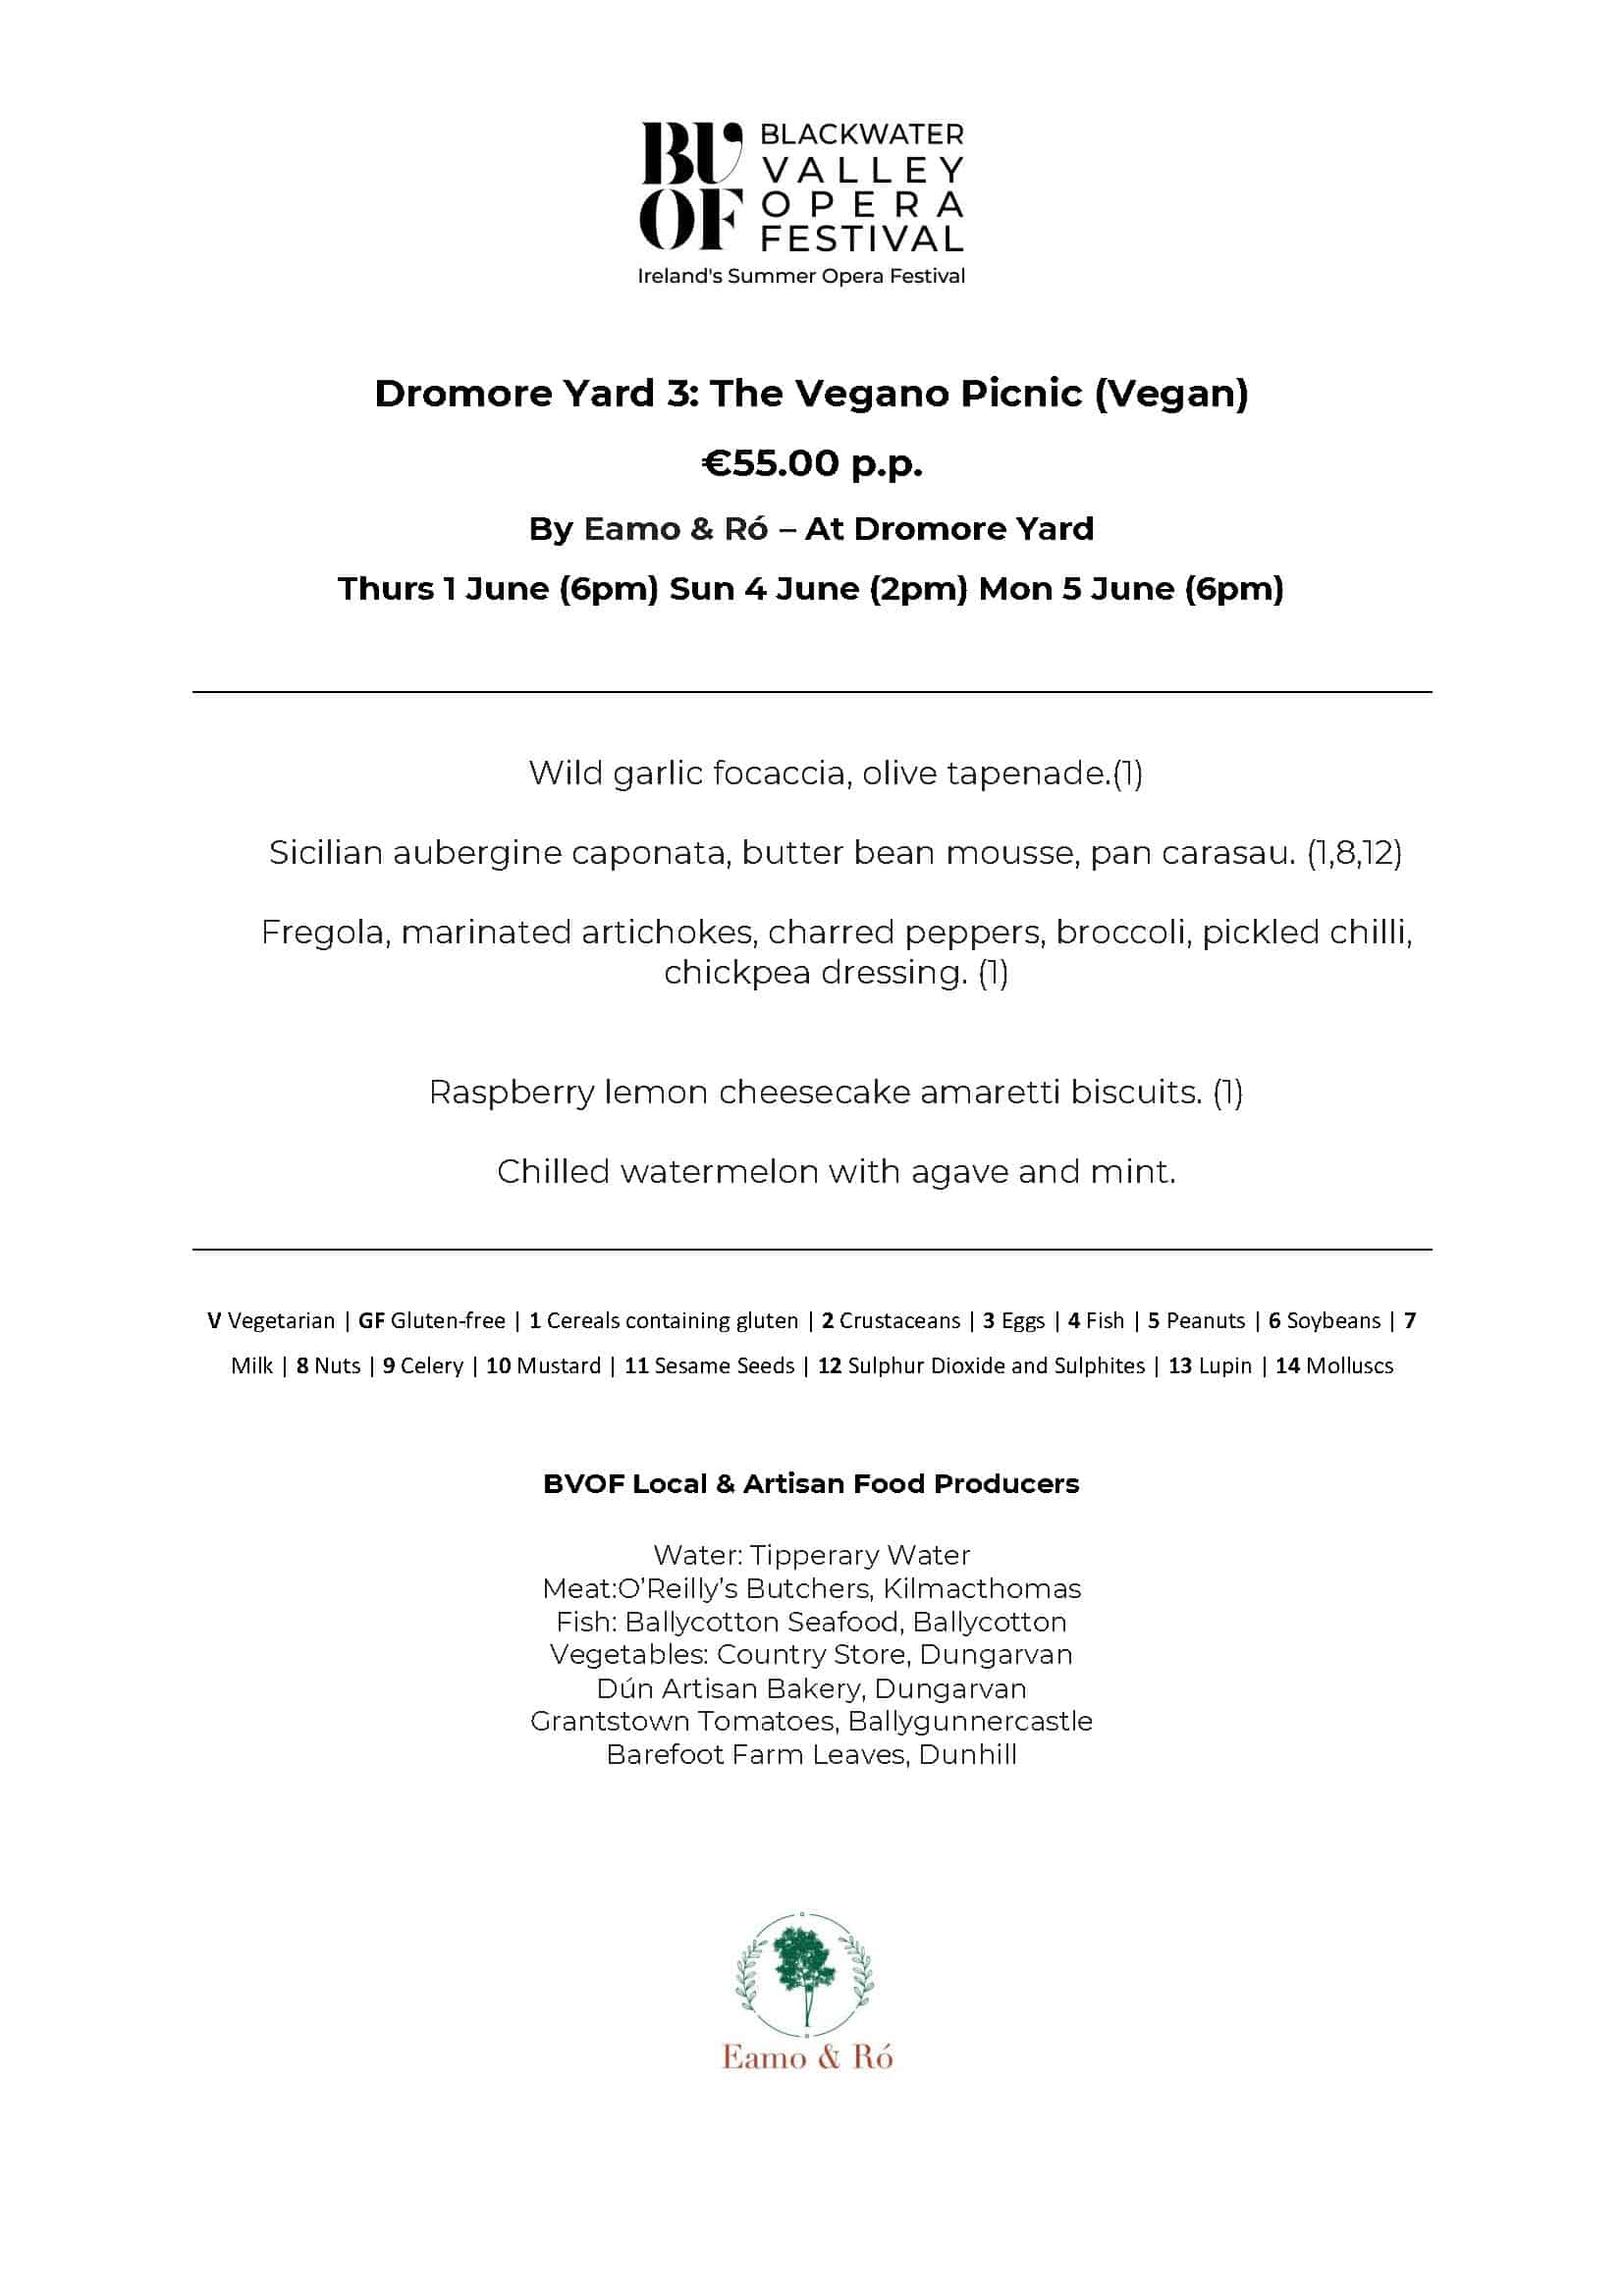 Dromore Yard Gourmet 3 The Vegano Picnic (Vegan)